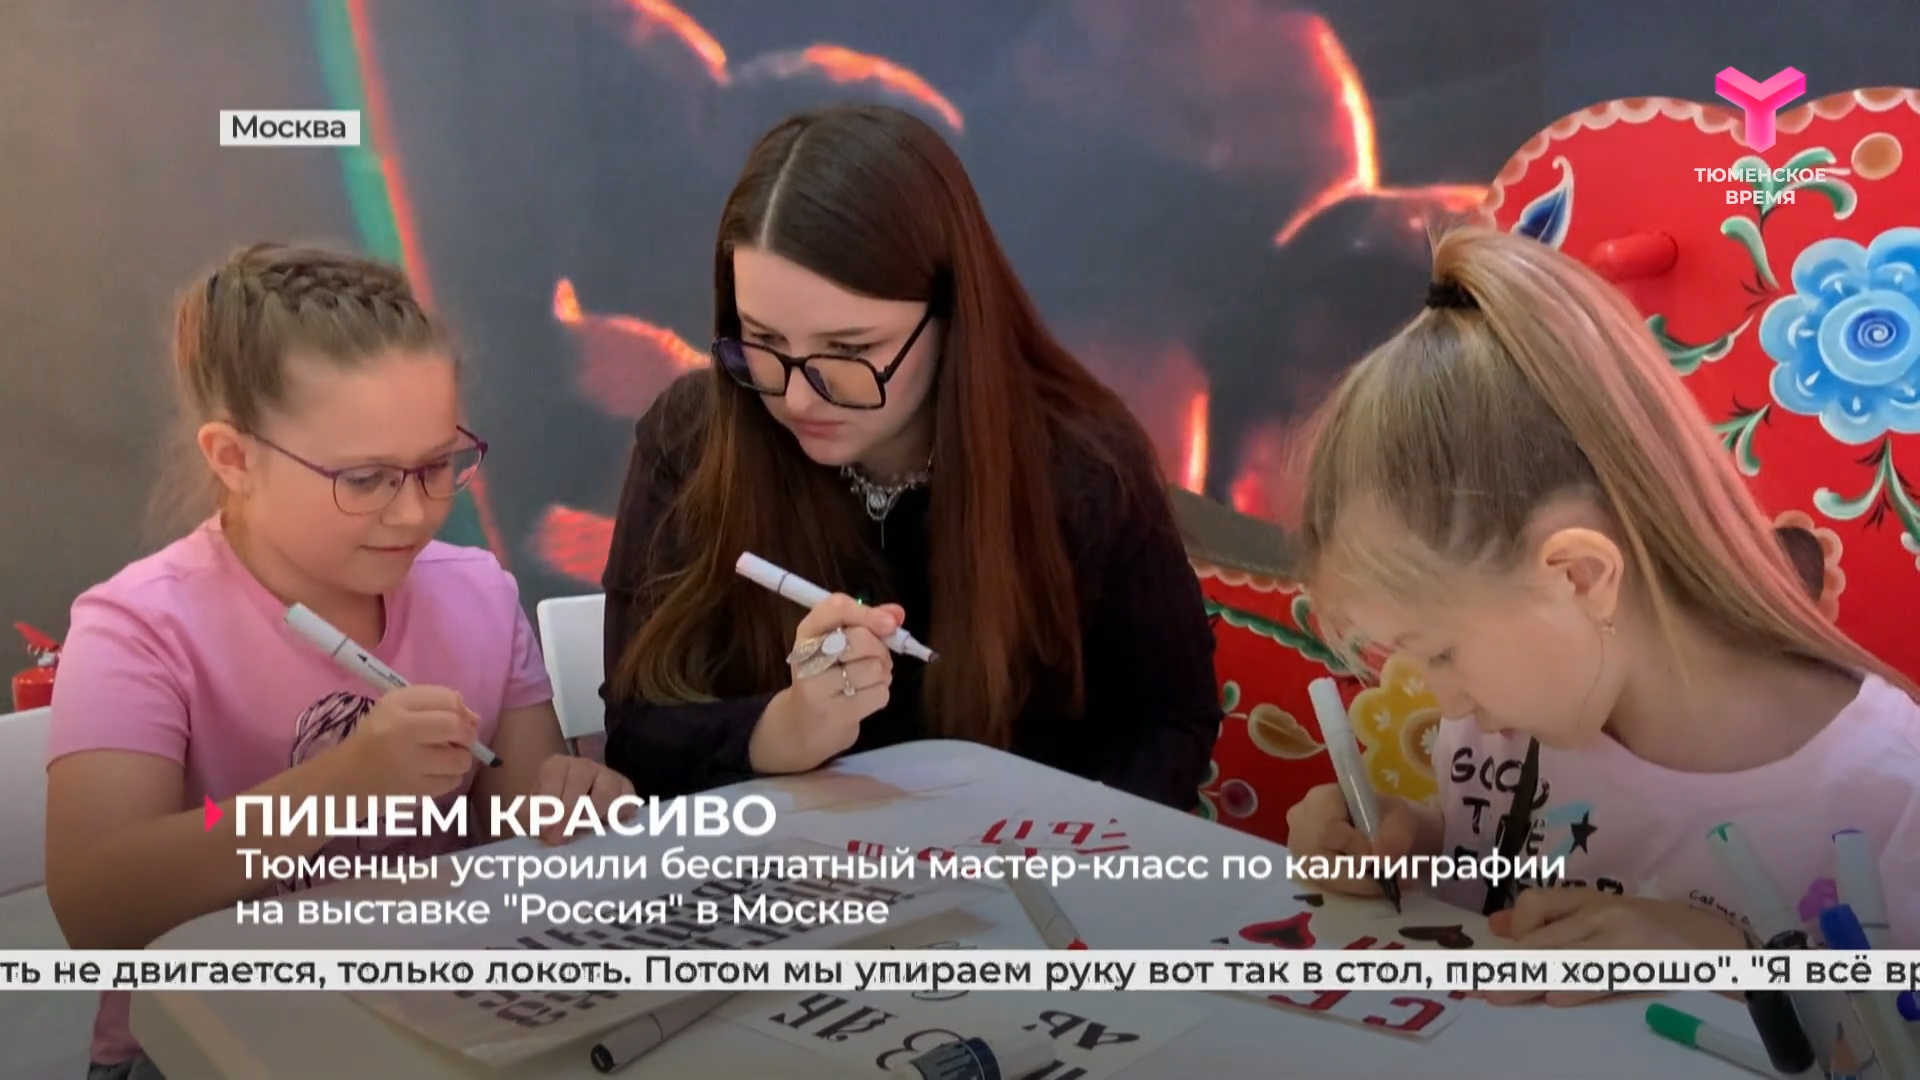 Тюменцы устроили бесплатный мастер-класс по каллиграфии на выставке "Россия" в Москве